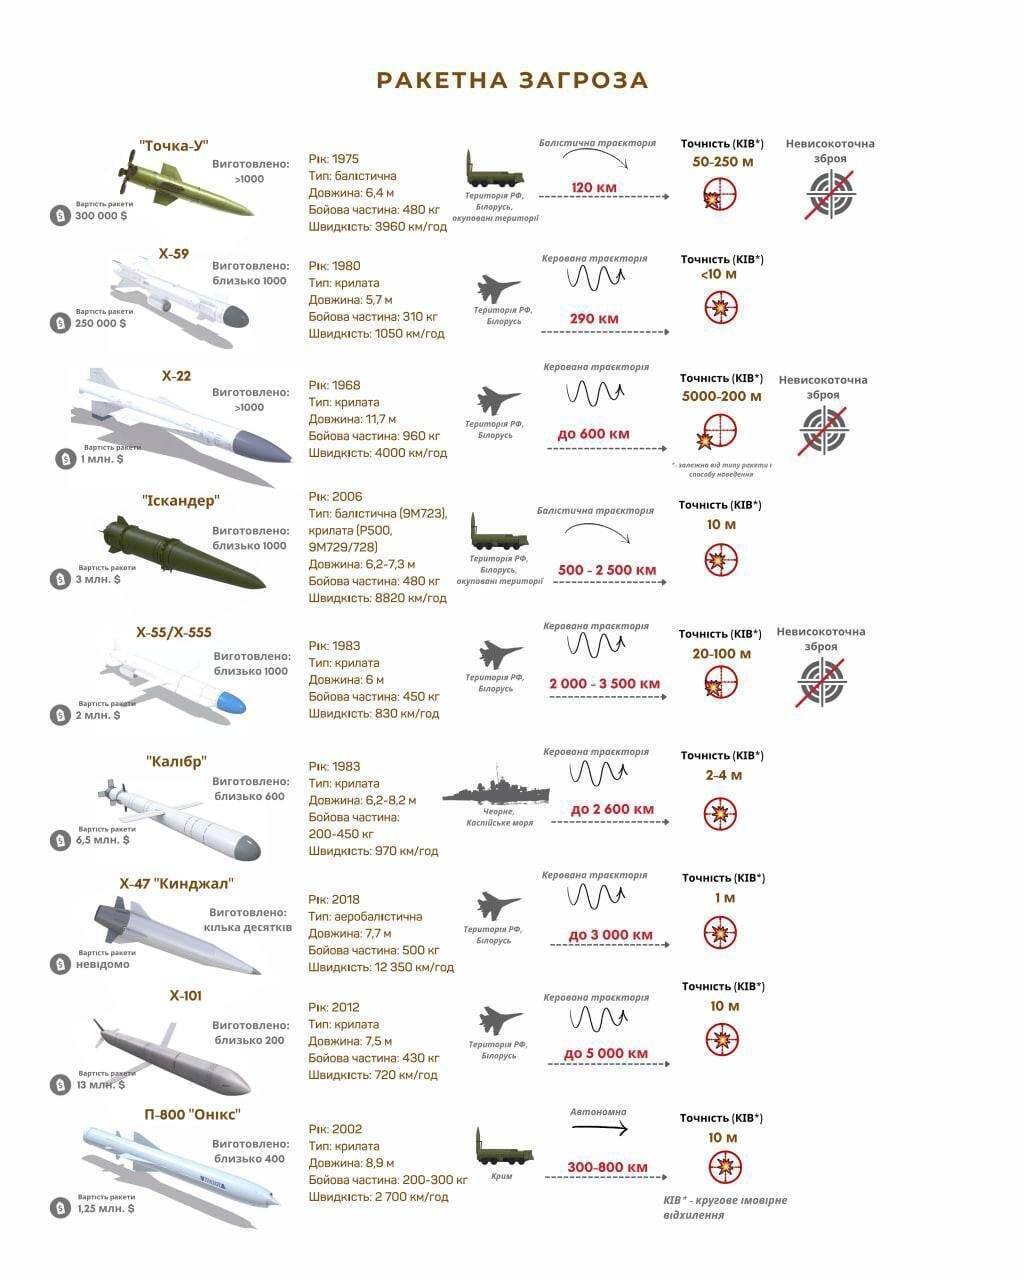 Характеристики ракет, які стоять на озброєнні армії Росії